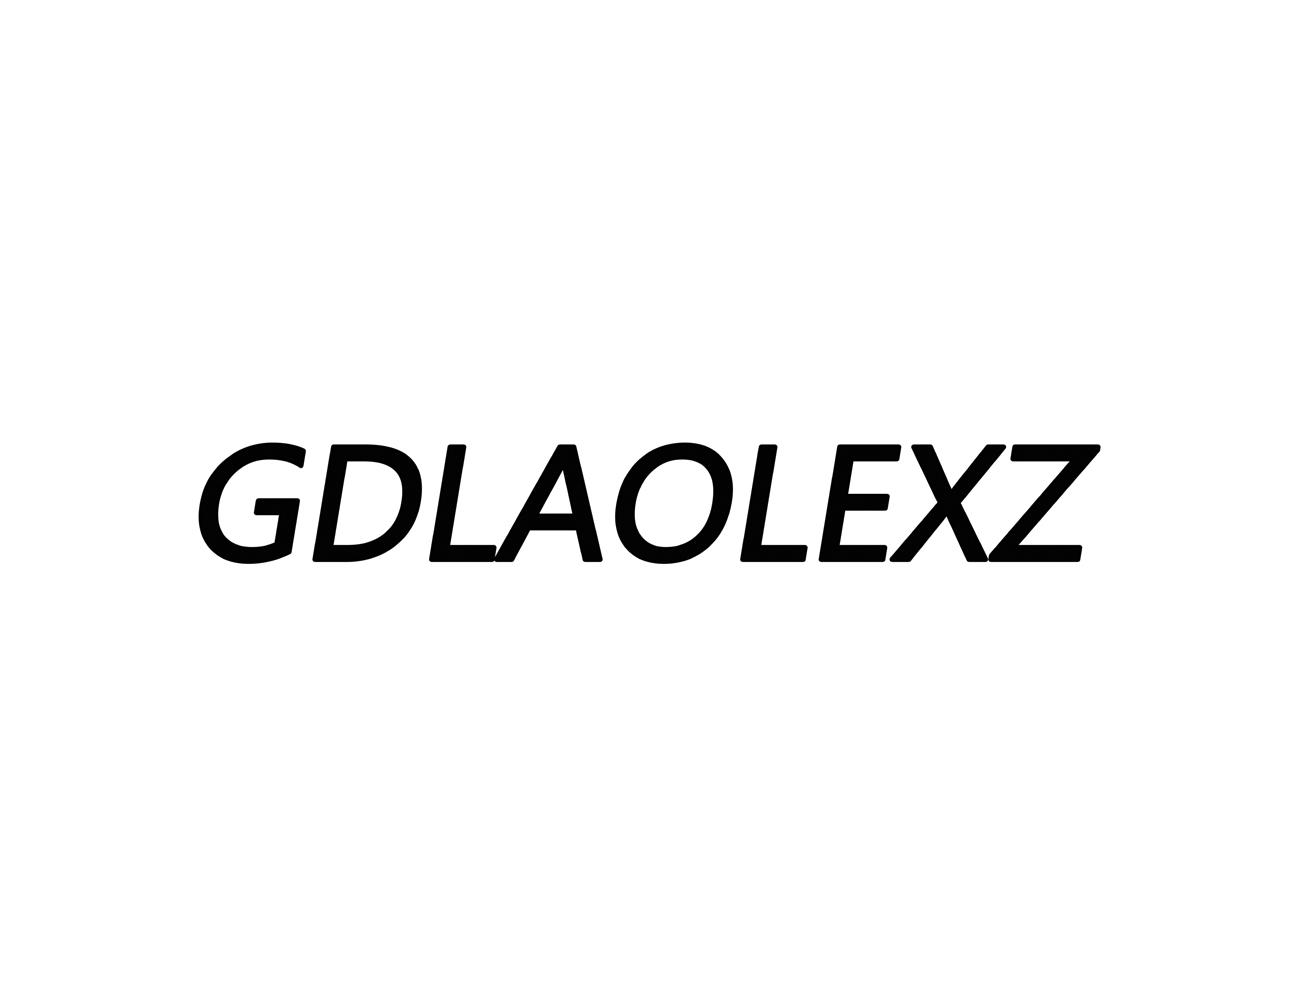 35类-广告销售GDLAOLEXZ商标转让